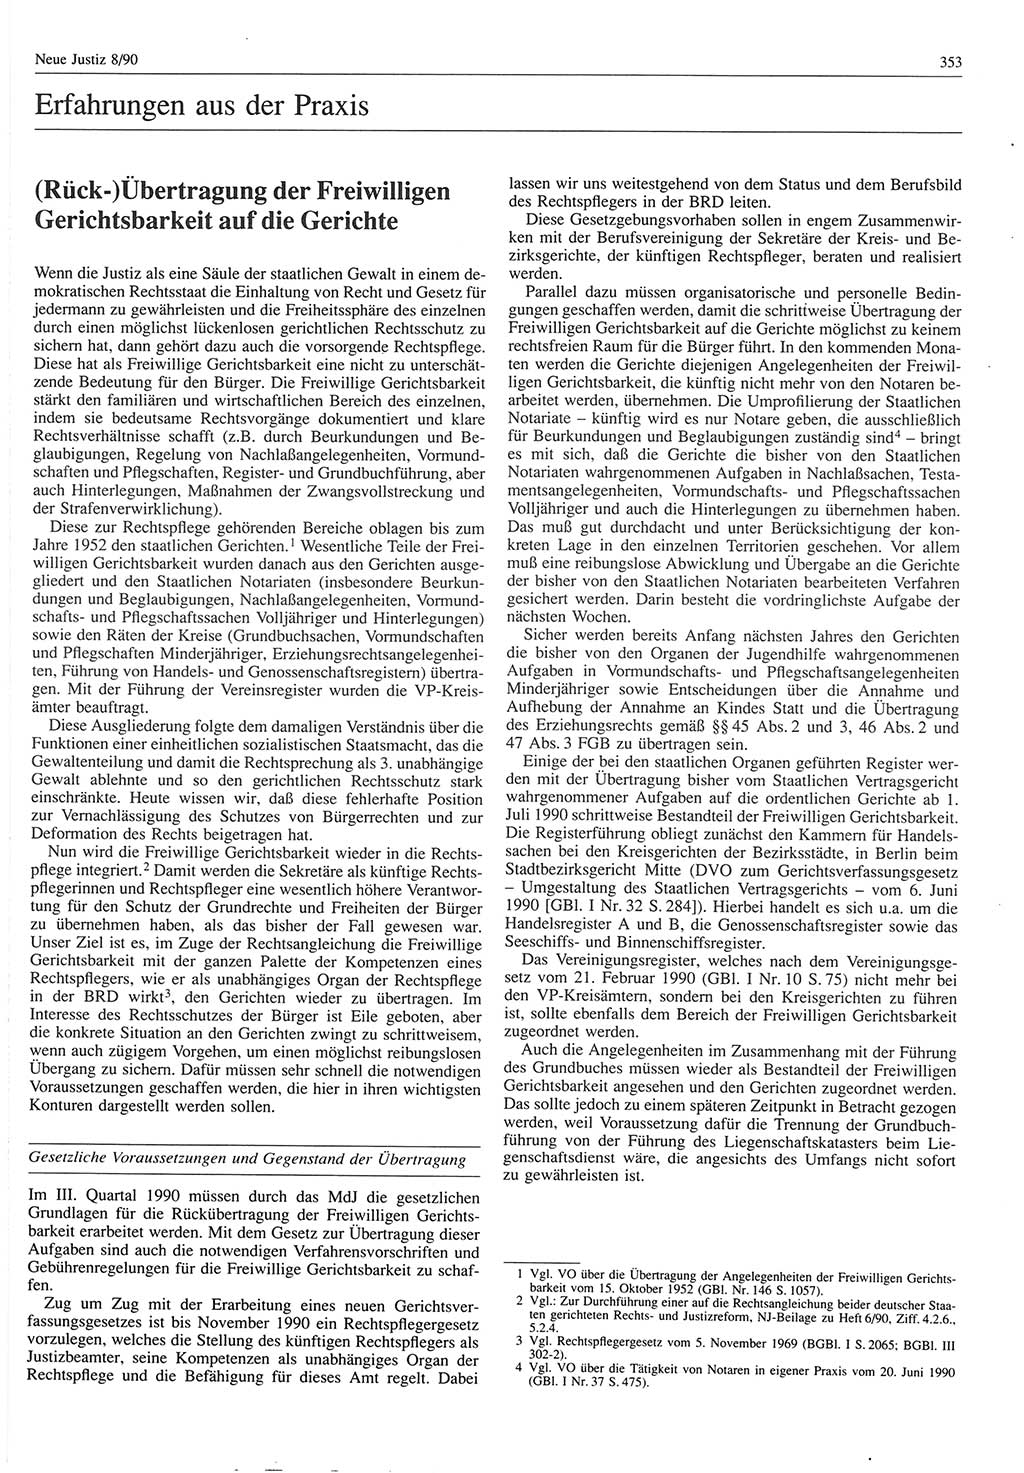 Neue Justiz (NJ), Zeitschrift für Rechtsetzung und Rechtsanwendung [Deutsche Demokratische Republik (DDR)], 44. Jahrgang 1990, Seite 353 (NJ DDR 1990, S. 353)